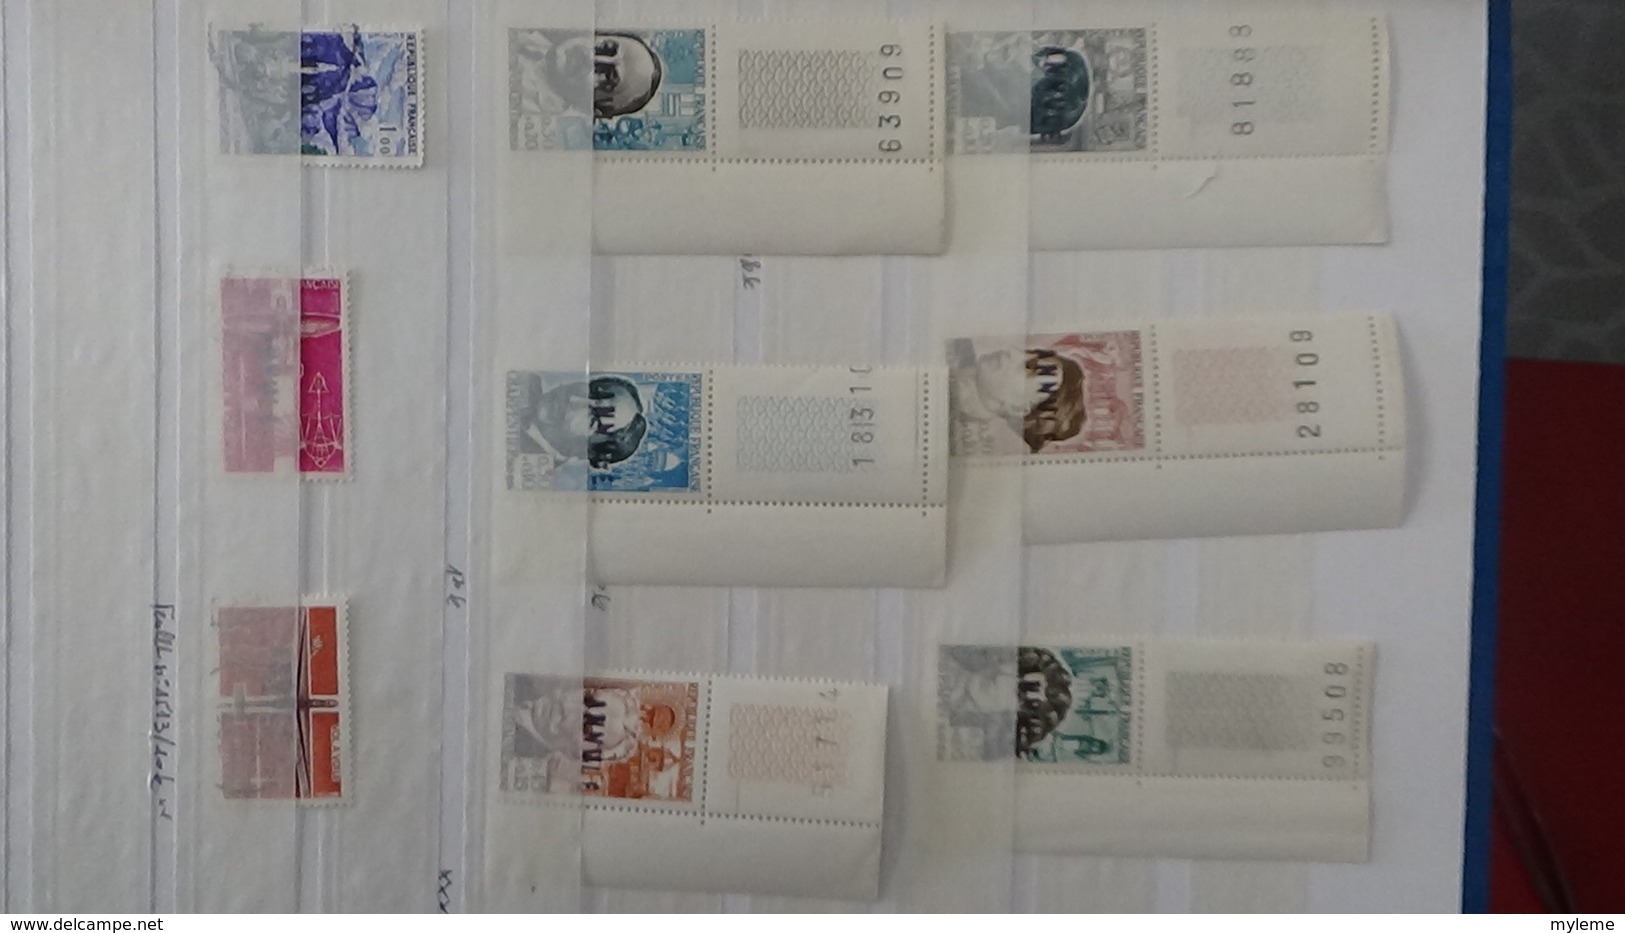 Belle collection de timbres surchargés EA tous états dont un bon pourcentage signés. Pas commun. A saisir !!!